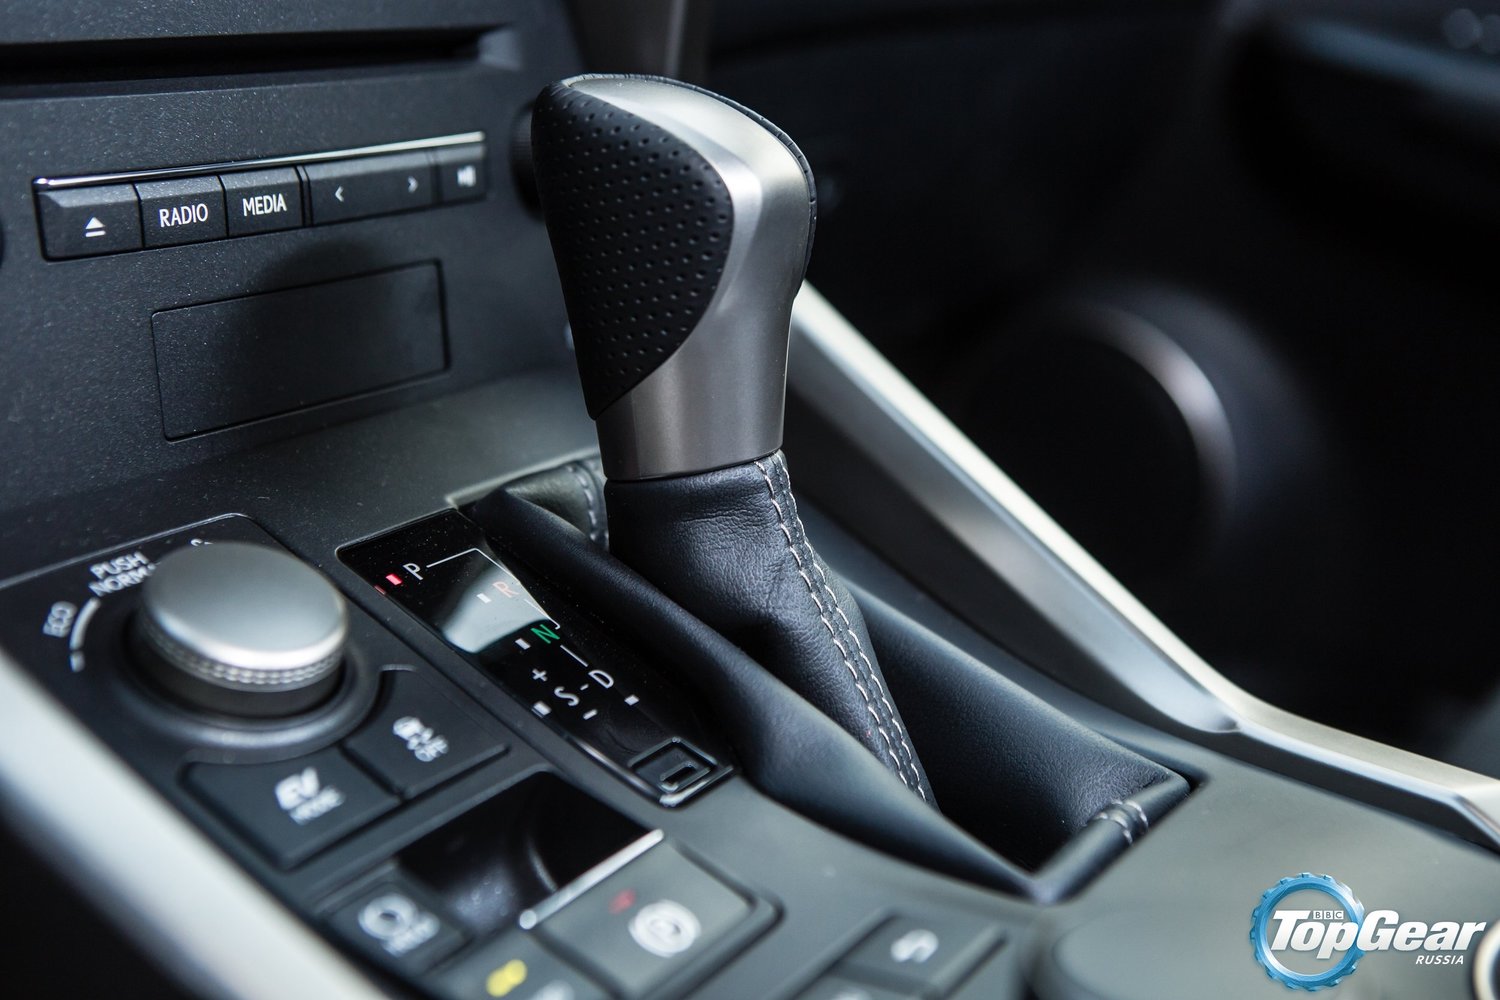 кроссовер Lexus NX 2014 - 2016г выпуска модификация Executive 2.5 CVT (155 л.с.) 4×4